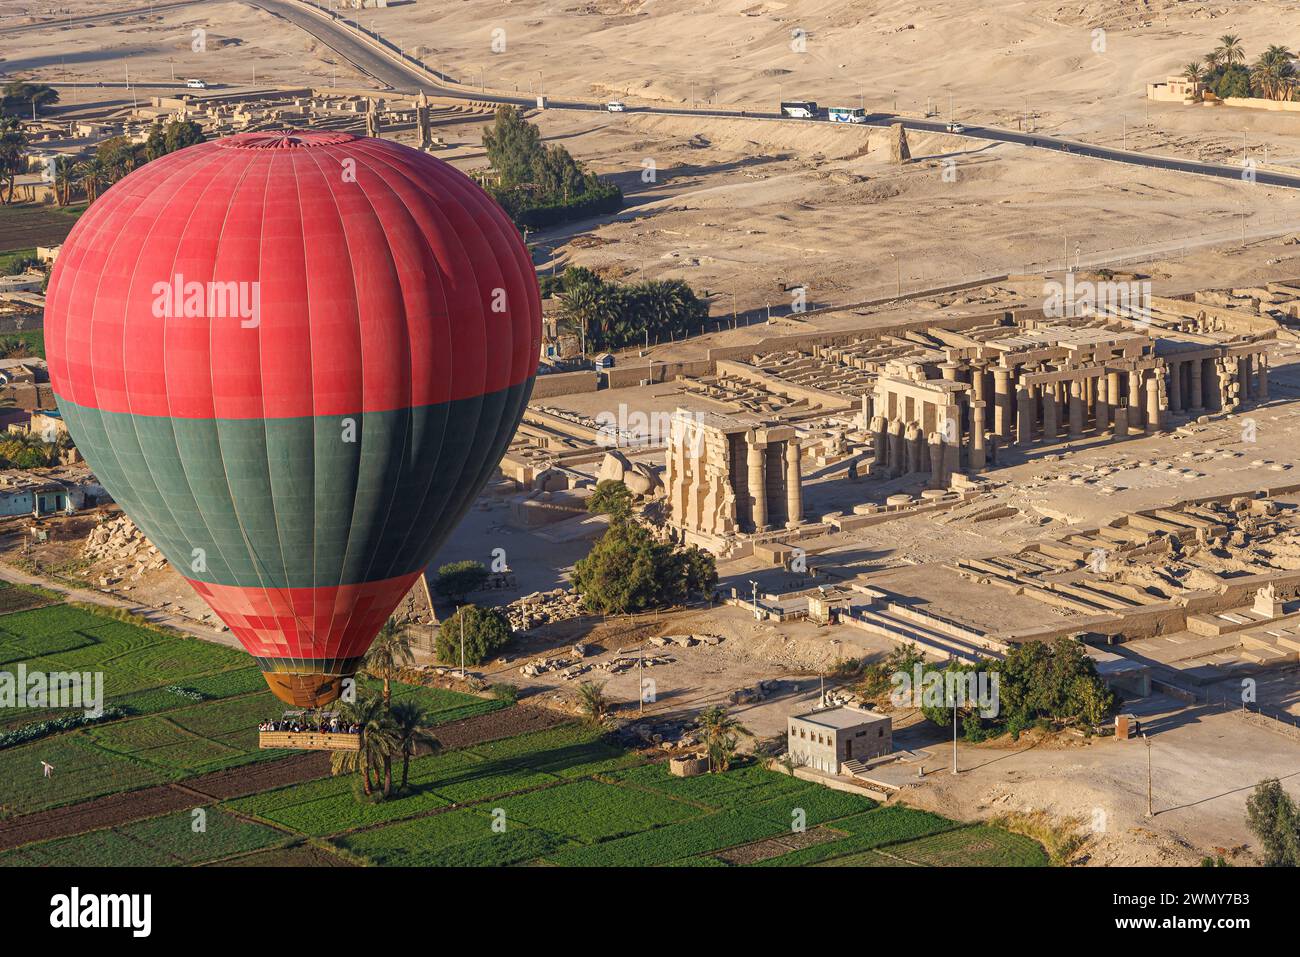 Ägypten, Luxor, das antike Theben mit seiner Nekropole, die von der UNESCO zum Weltkulturerbe erklärt wurde, Heißluftballon über dem Ramasseum Ramesses II Tempel (aus der Vogelperspektive) Stockfoto